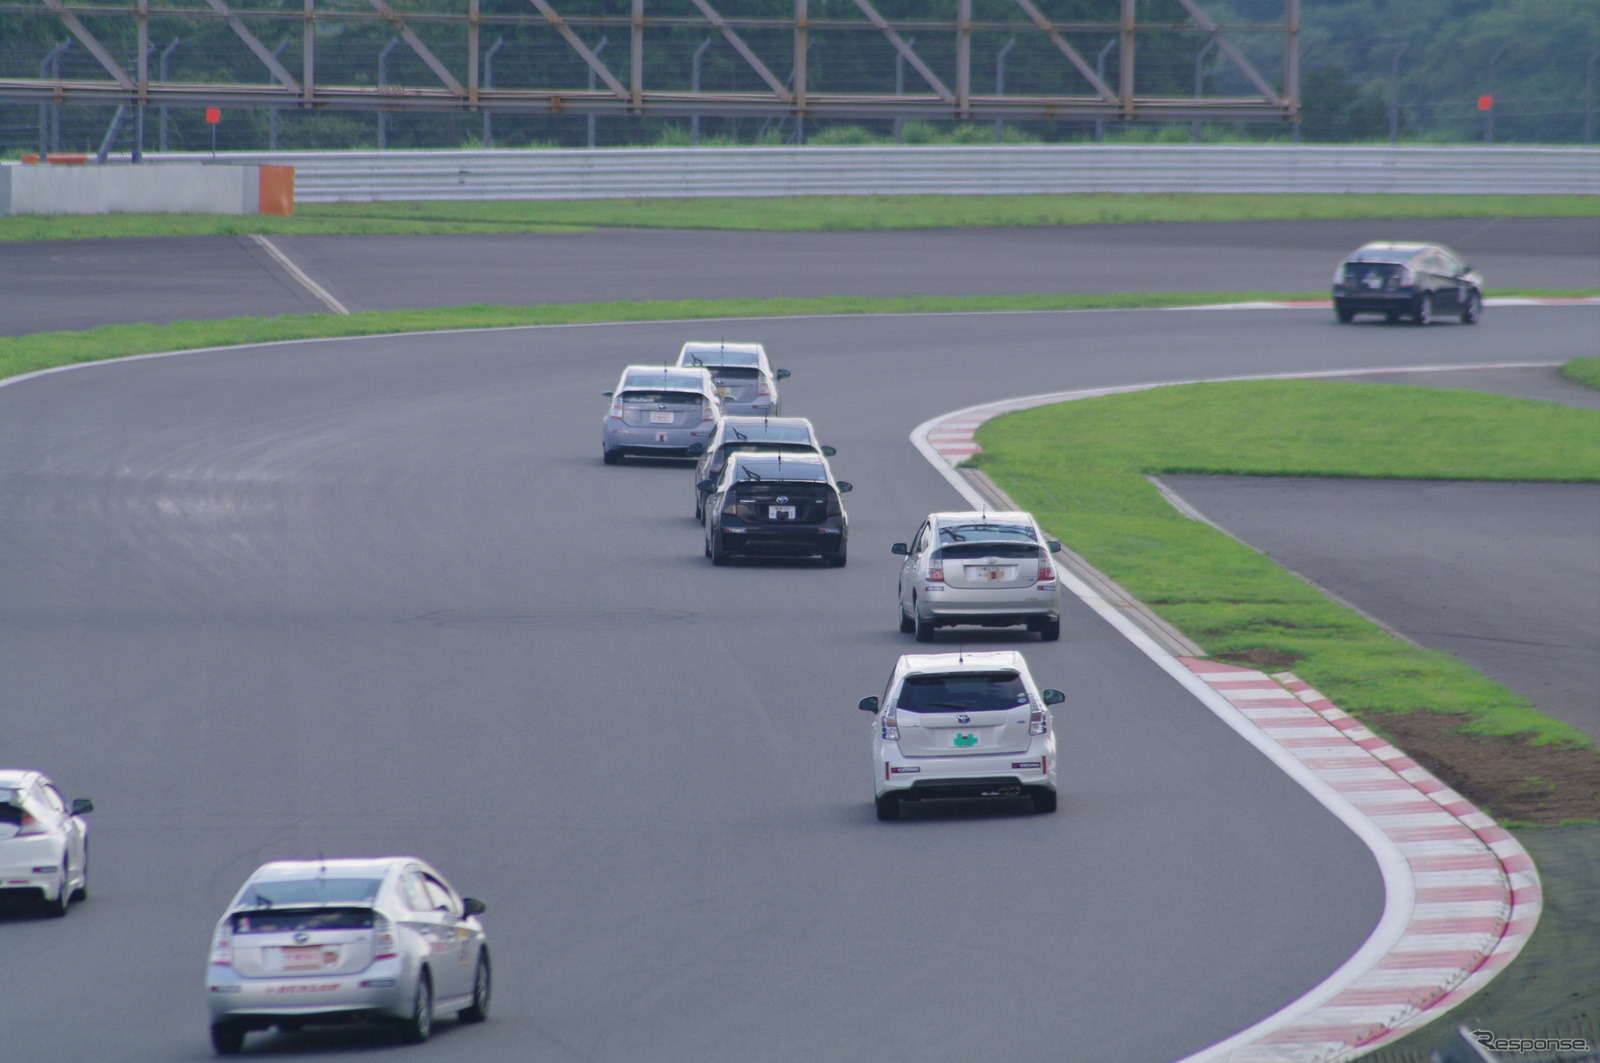 ハイブリッドカーによるレース、エコカーカップが富士スピードウェイのレーシングコースで開催された